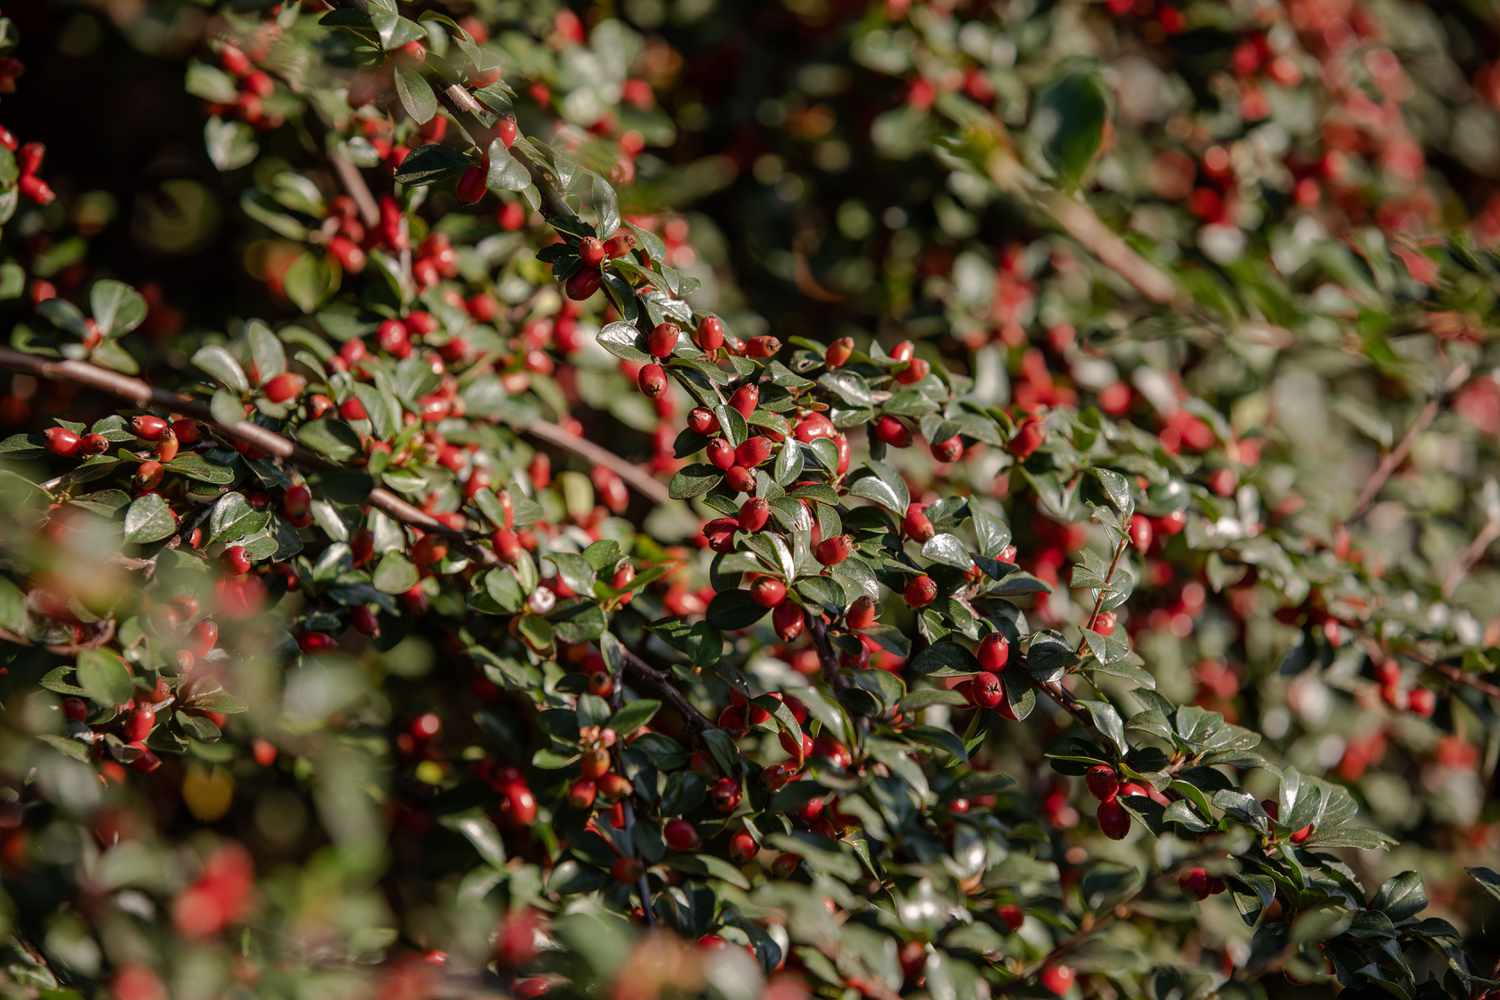 Cotoneasterstrauch mit roten Beeren und wachsartigen Blättern an den Zweigen